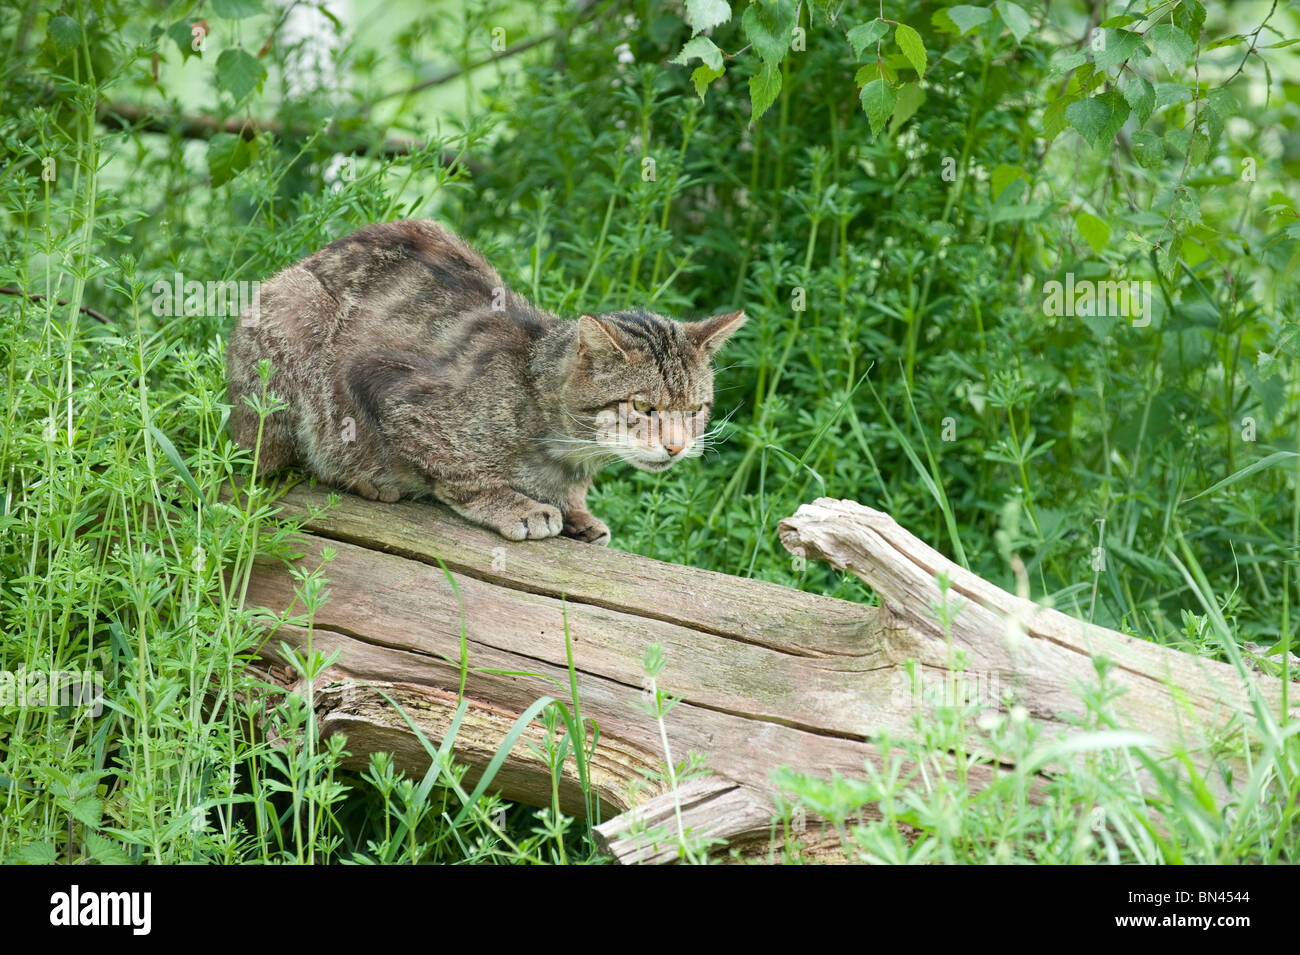 British gatto selvatico, ora trovato solo nel selvaggio in Scozia Foto Stock